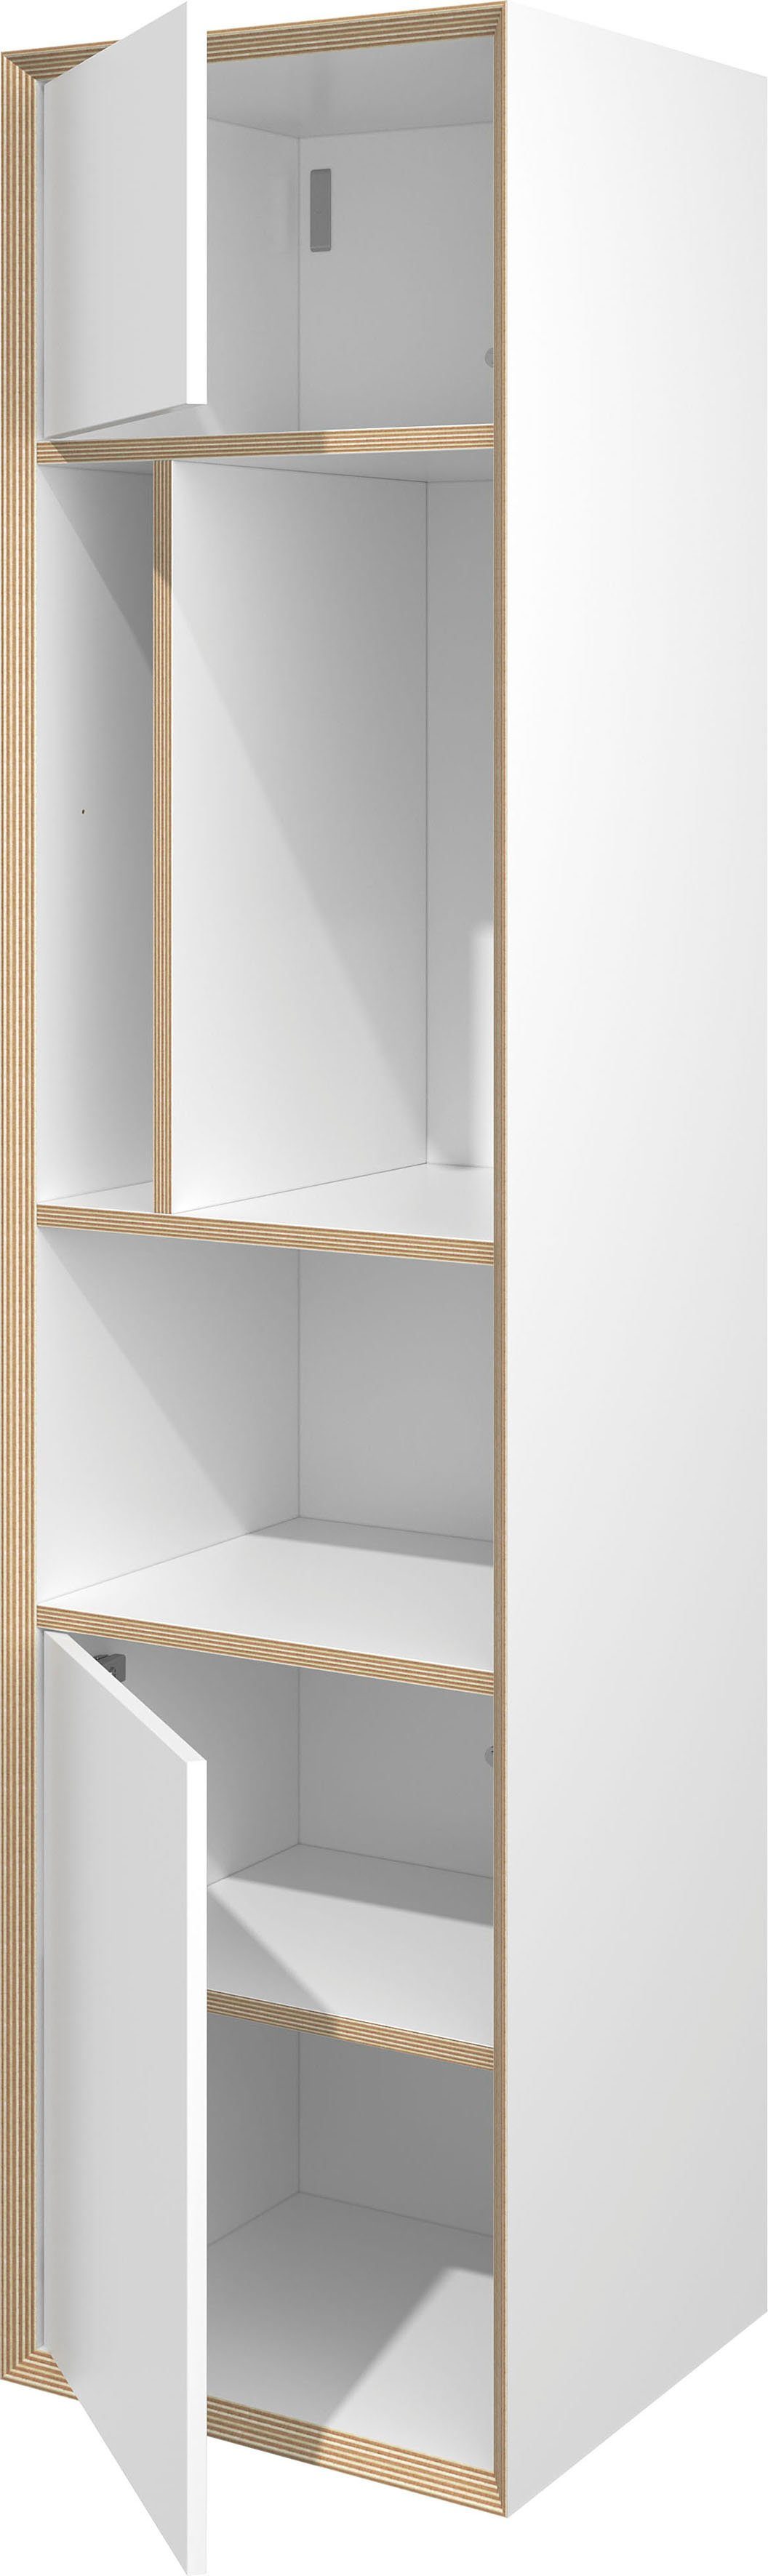 Müller SMALL LIVING Mehrzweckschrank VERTICO Hochschrank Bau optimal einer weiß Serie VERTICAL Wohnwand zum Vertiko, passend zur TWO